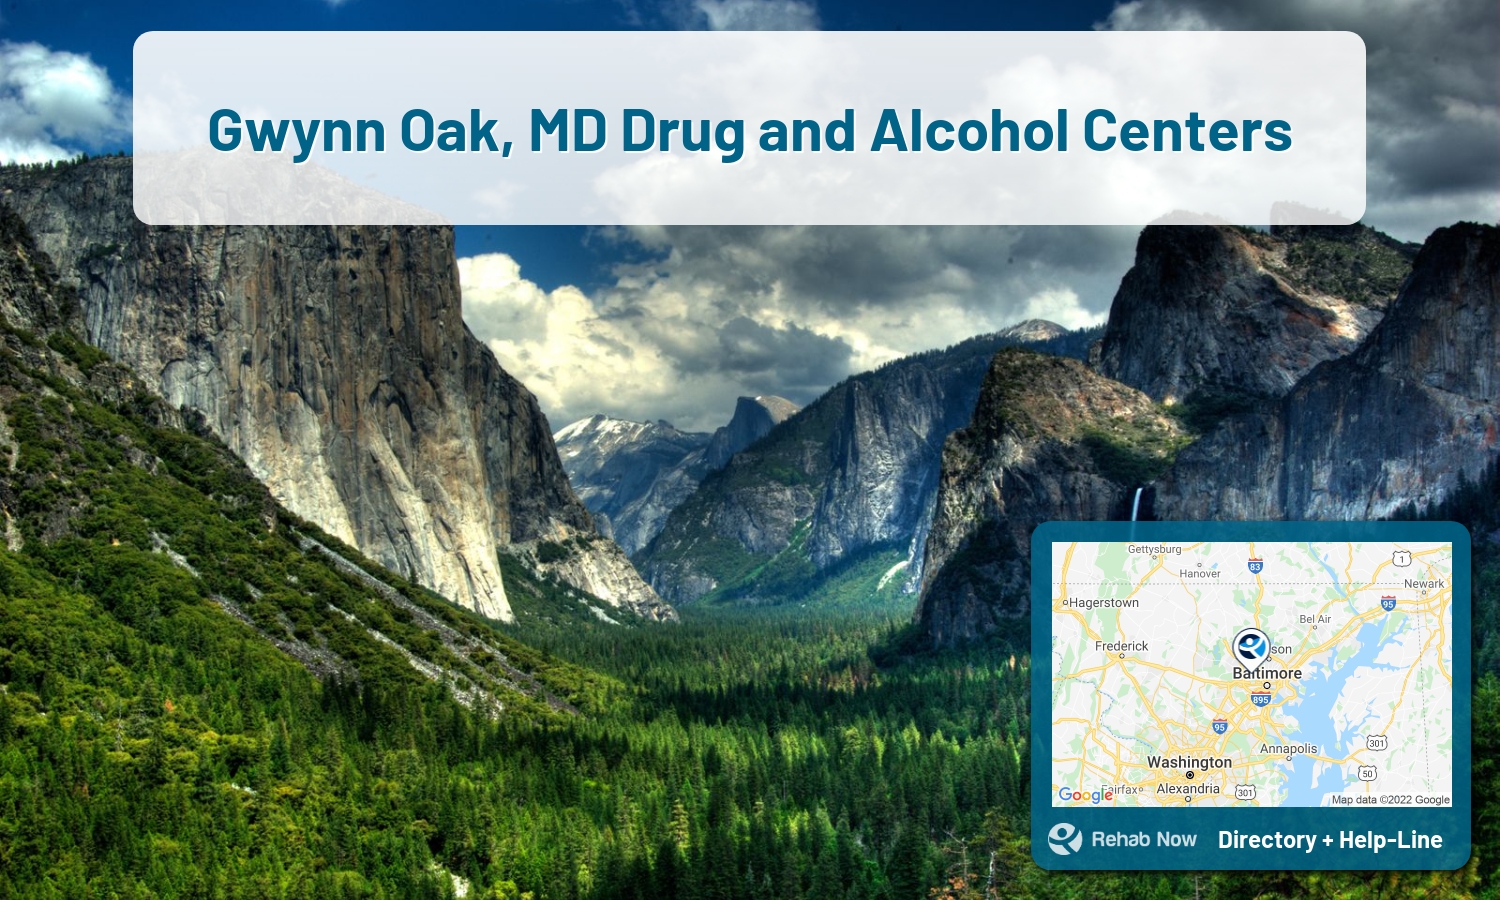 Gwynn Oak, MD Treatment Centers. Find drug rehab in Gwynn Oak, Maryland, or detox and treatment programs. Get the right help now!